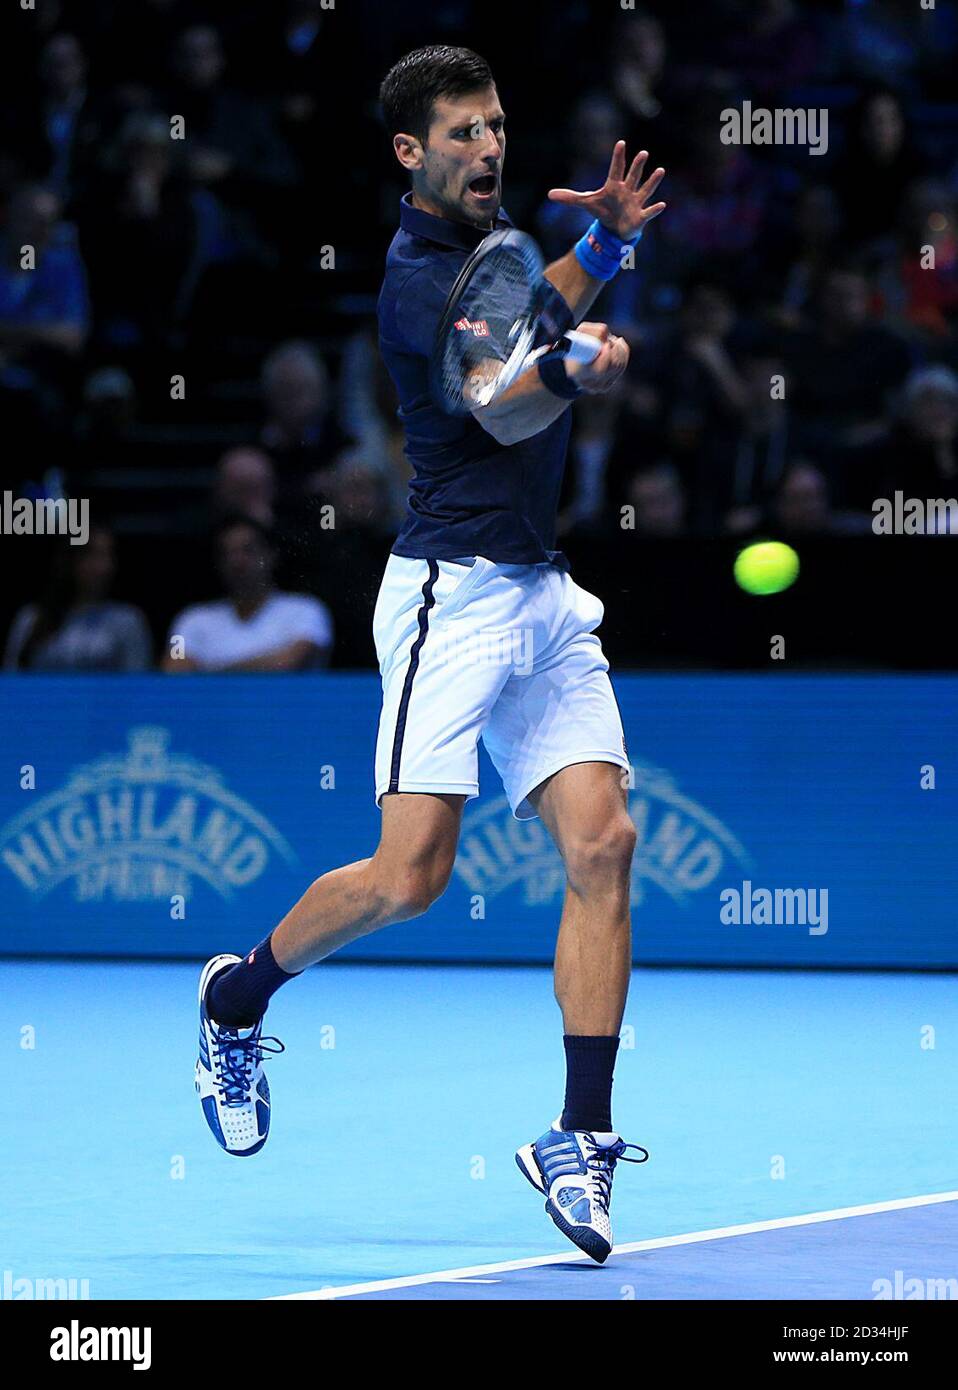 Novak Djokovic en action contre David Goffin pendant le cinquième jour des finales du Barclays ATP World Tour à l'O2, Londres. APPUYEZ SUR ASSOCIATION photo. Date de la photo: Jeudi 17 novembre 2016. Voir PA Story TENNIS Londres. Le crédit photo doit être lu : Jonathan Brady/PA Wire. Banque D'Images